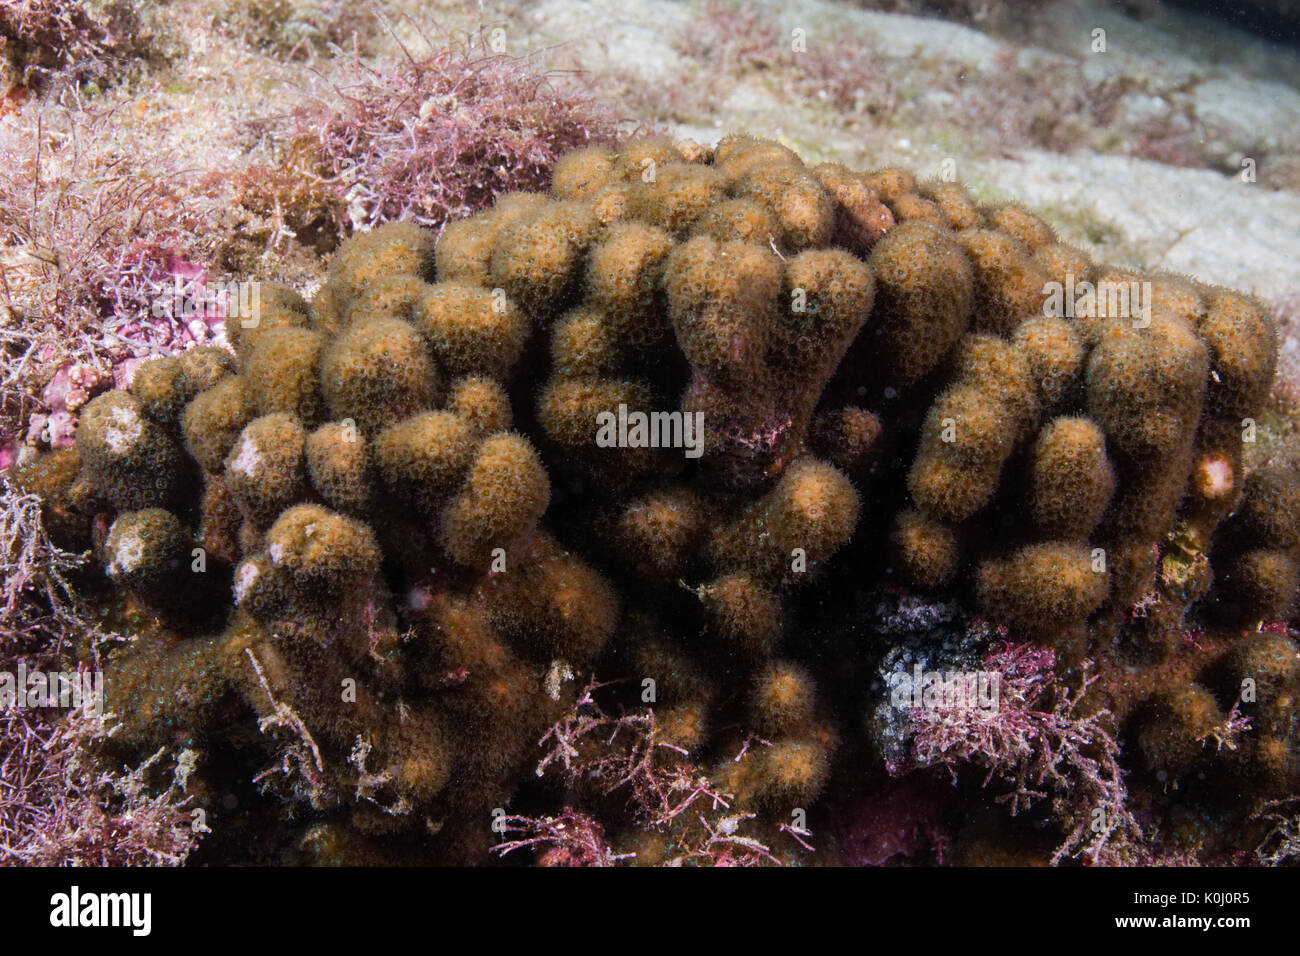 Reef coral genero madracis, especie madracis decactis, submarino Queimada Grande Island, en el sudeste de Brasil Foto de stock